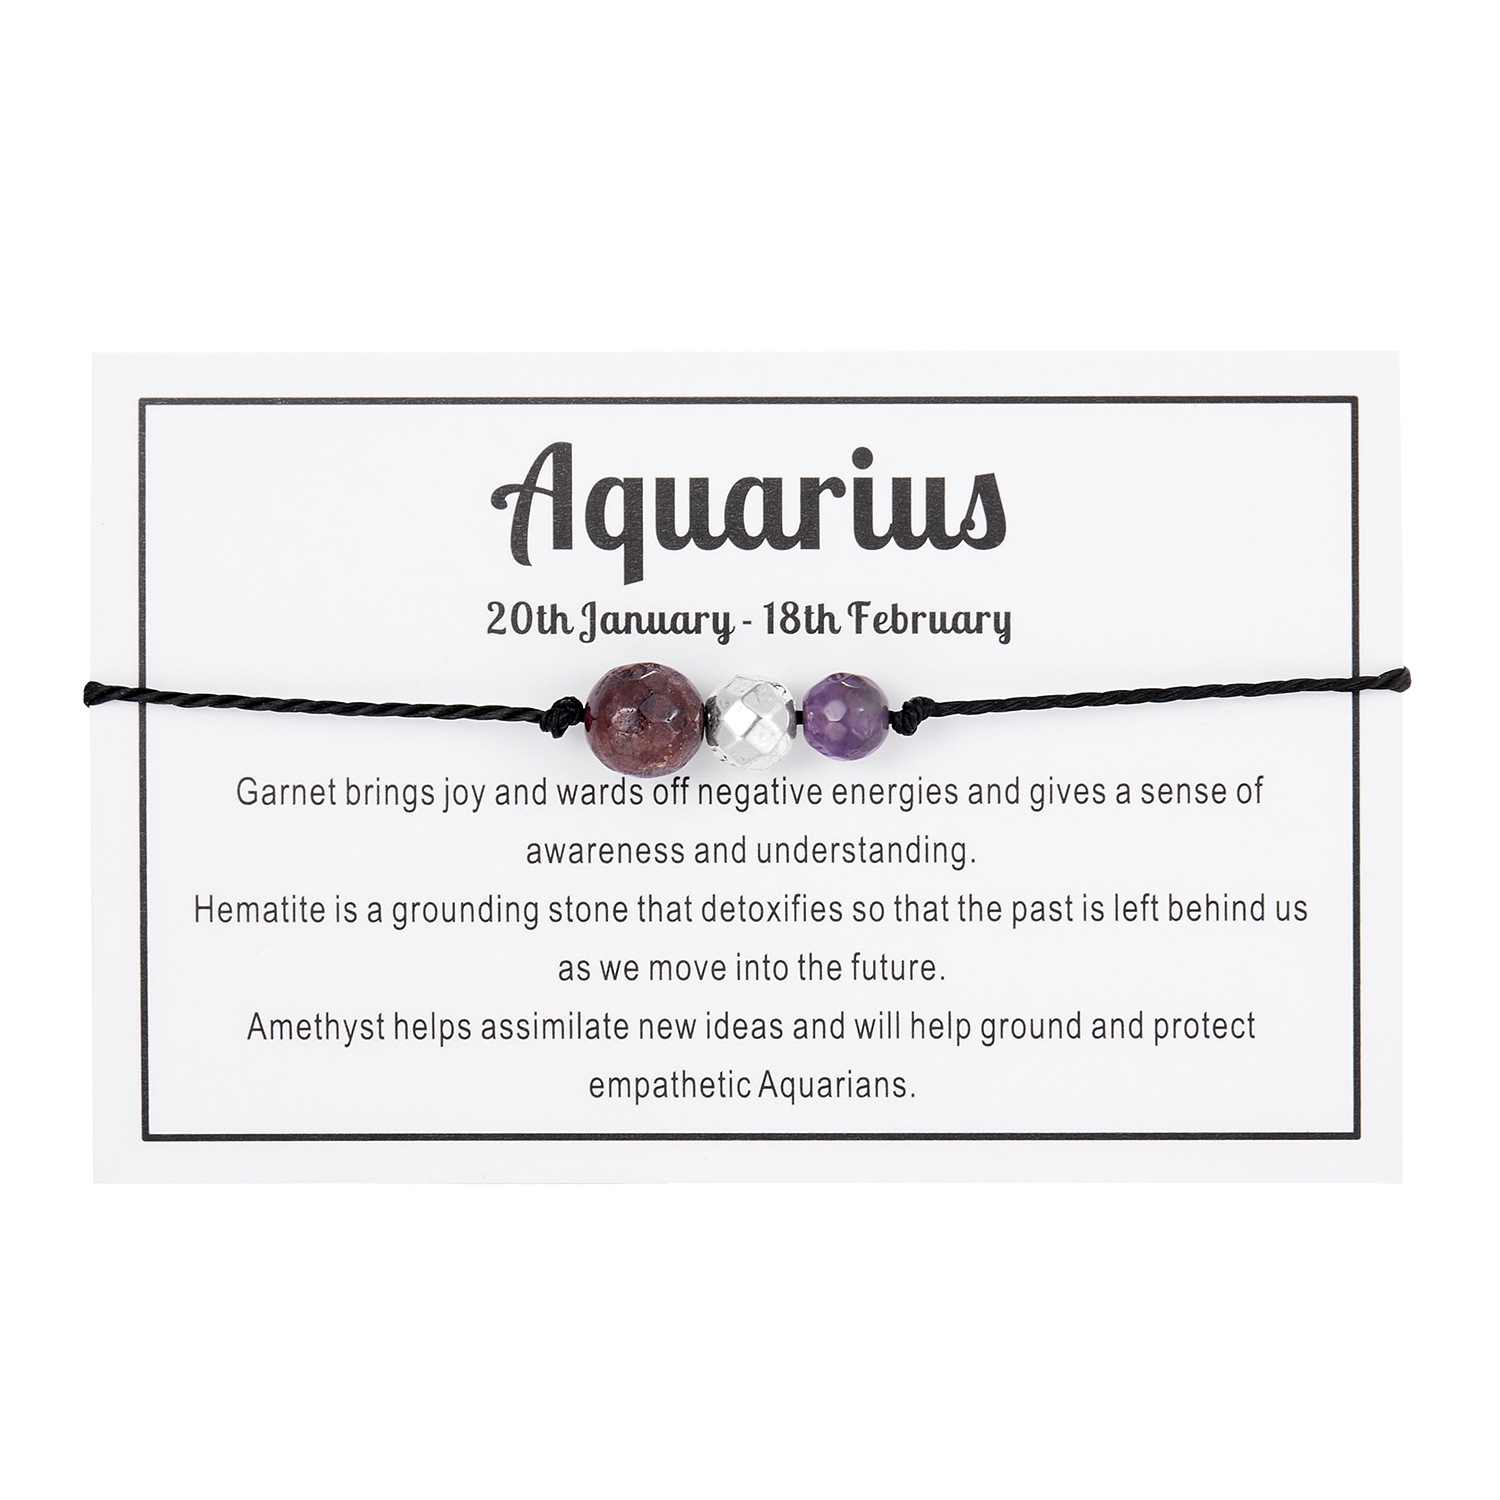 1:Aquarius